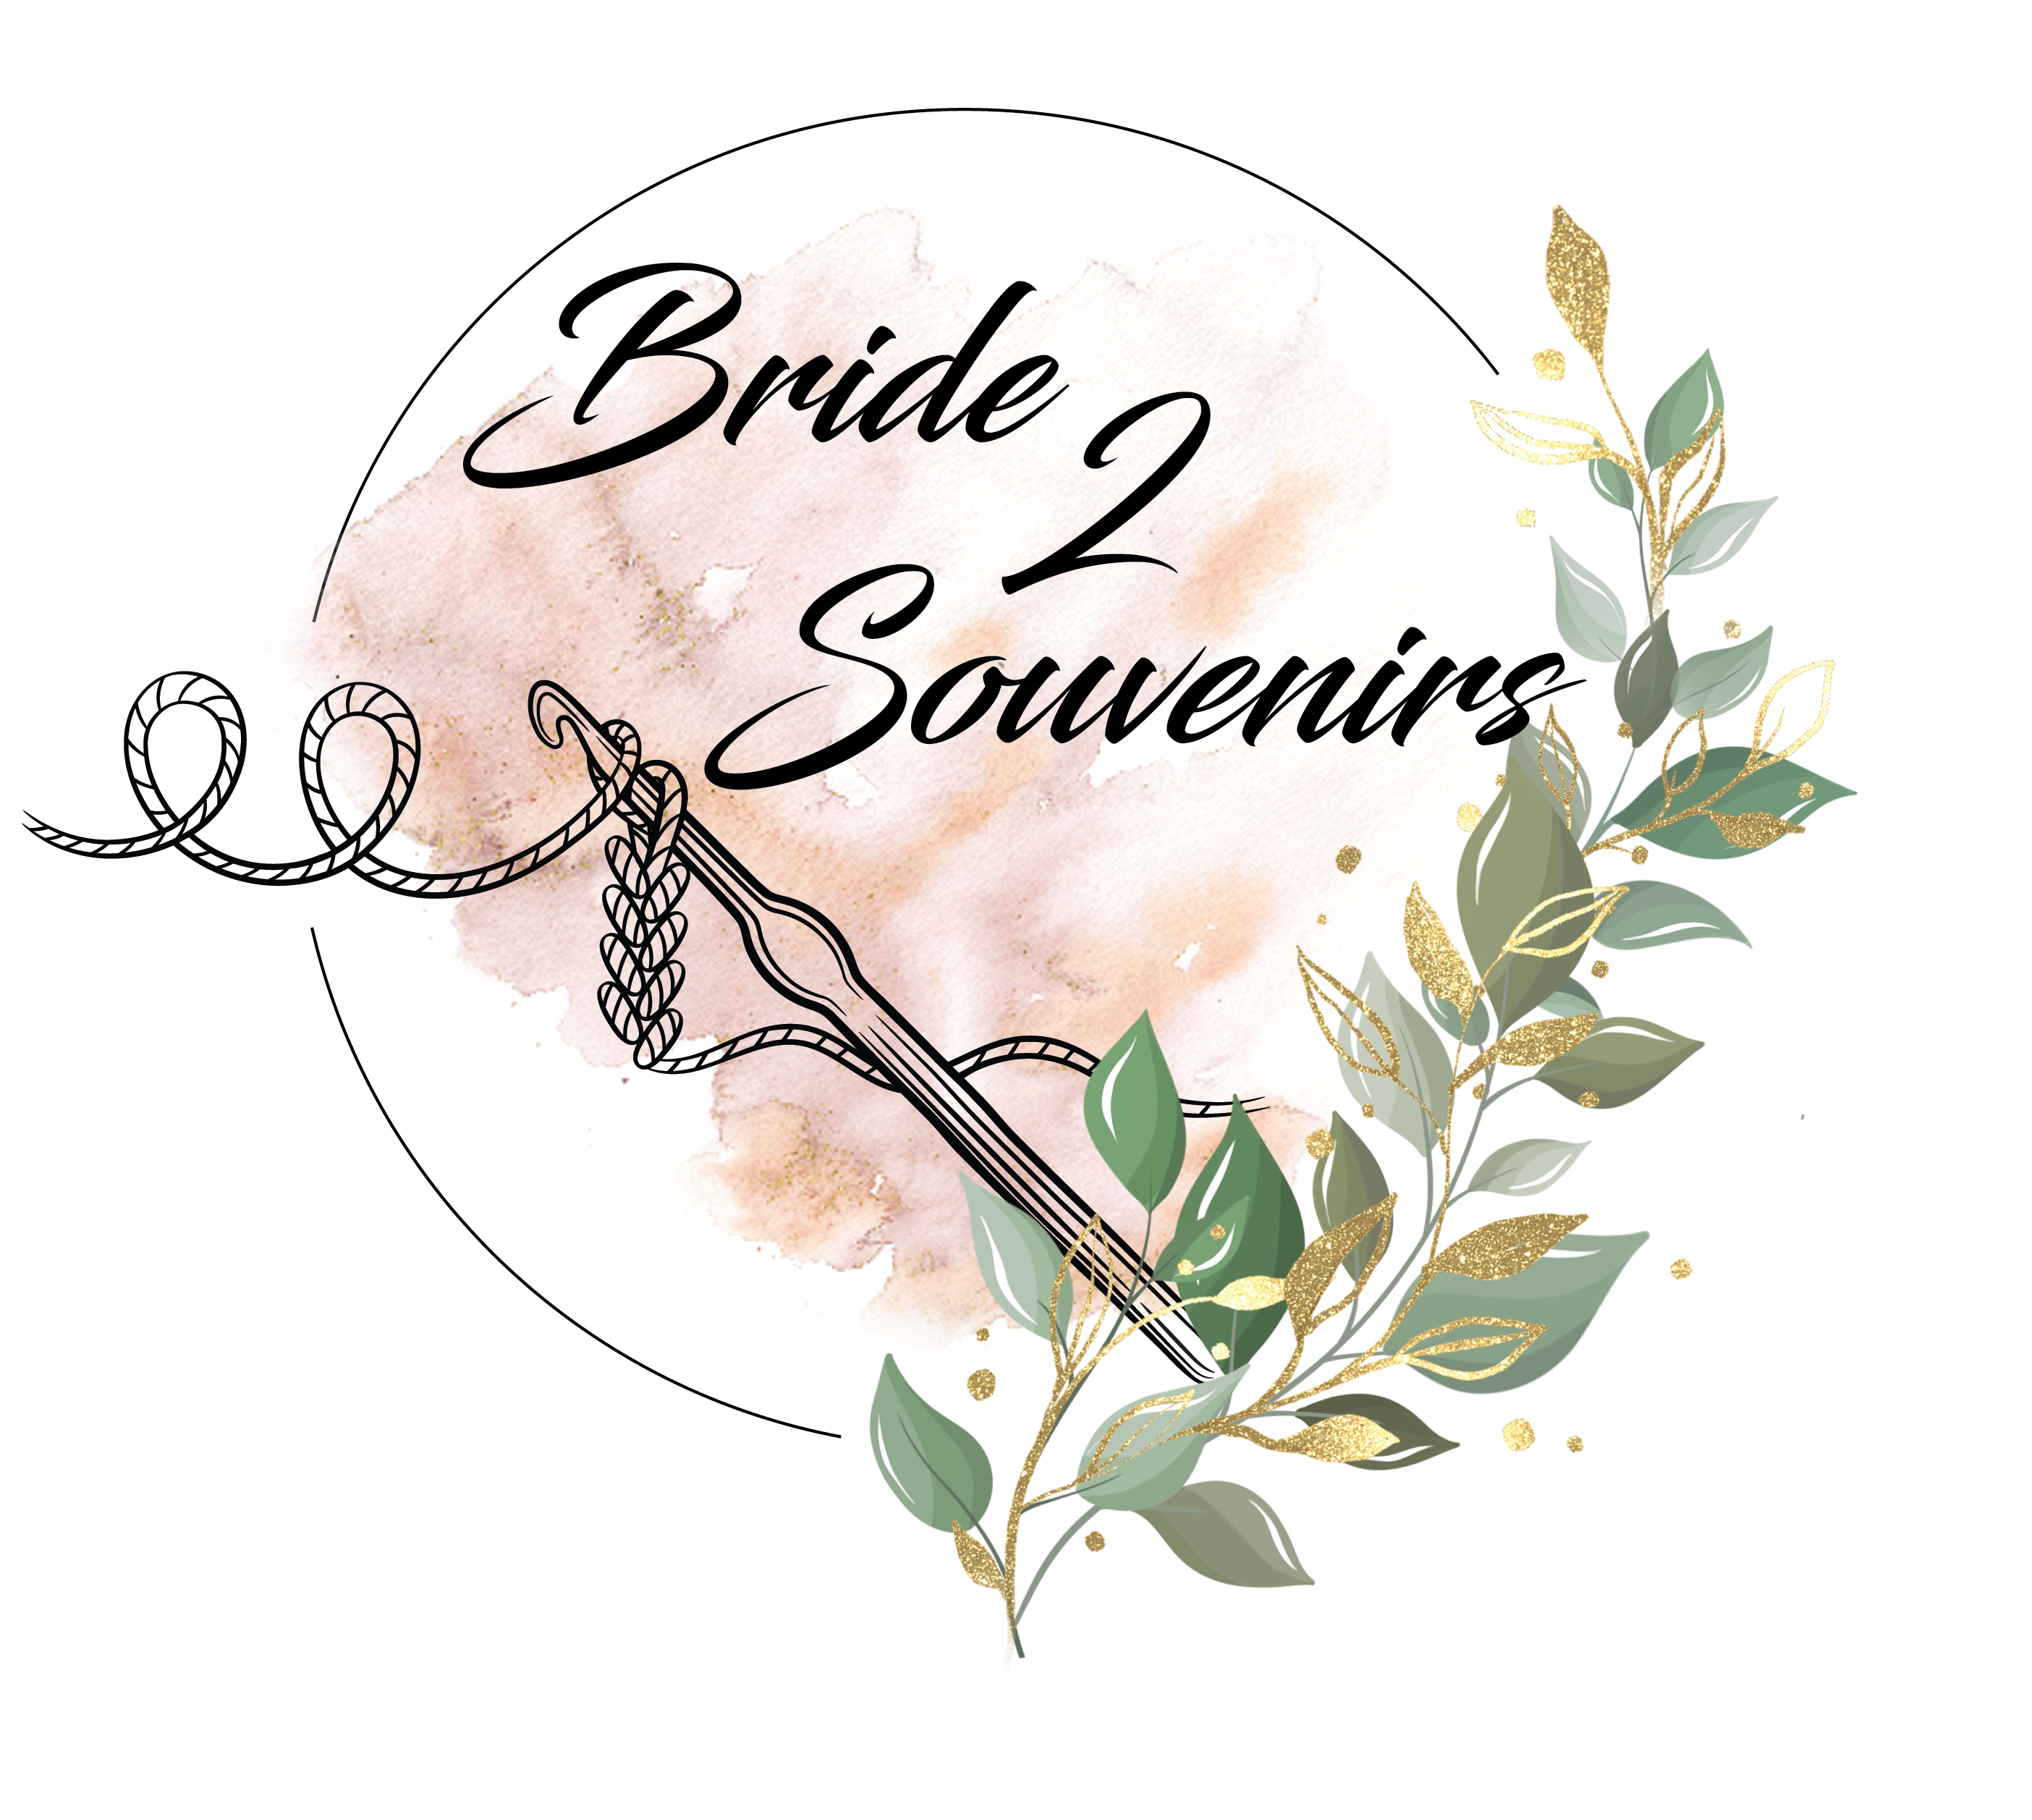 Bride 2 Souvenirs